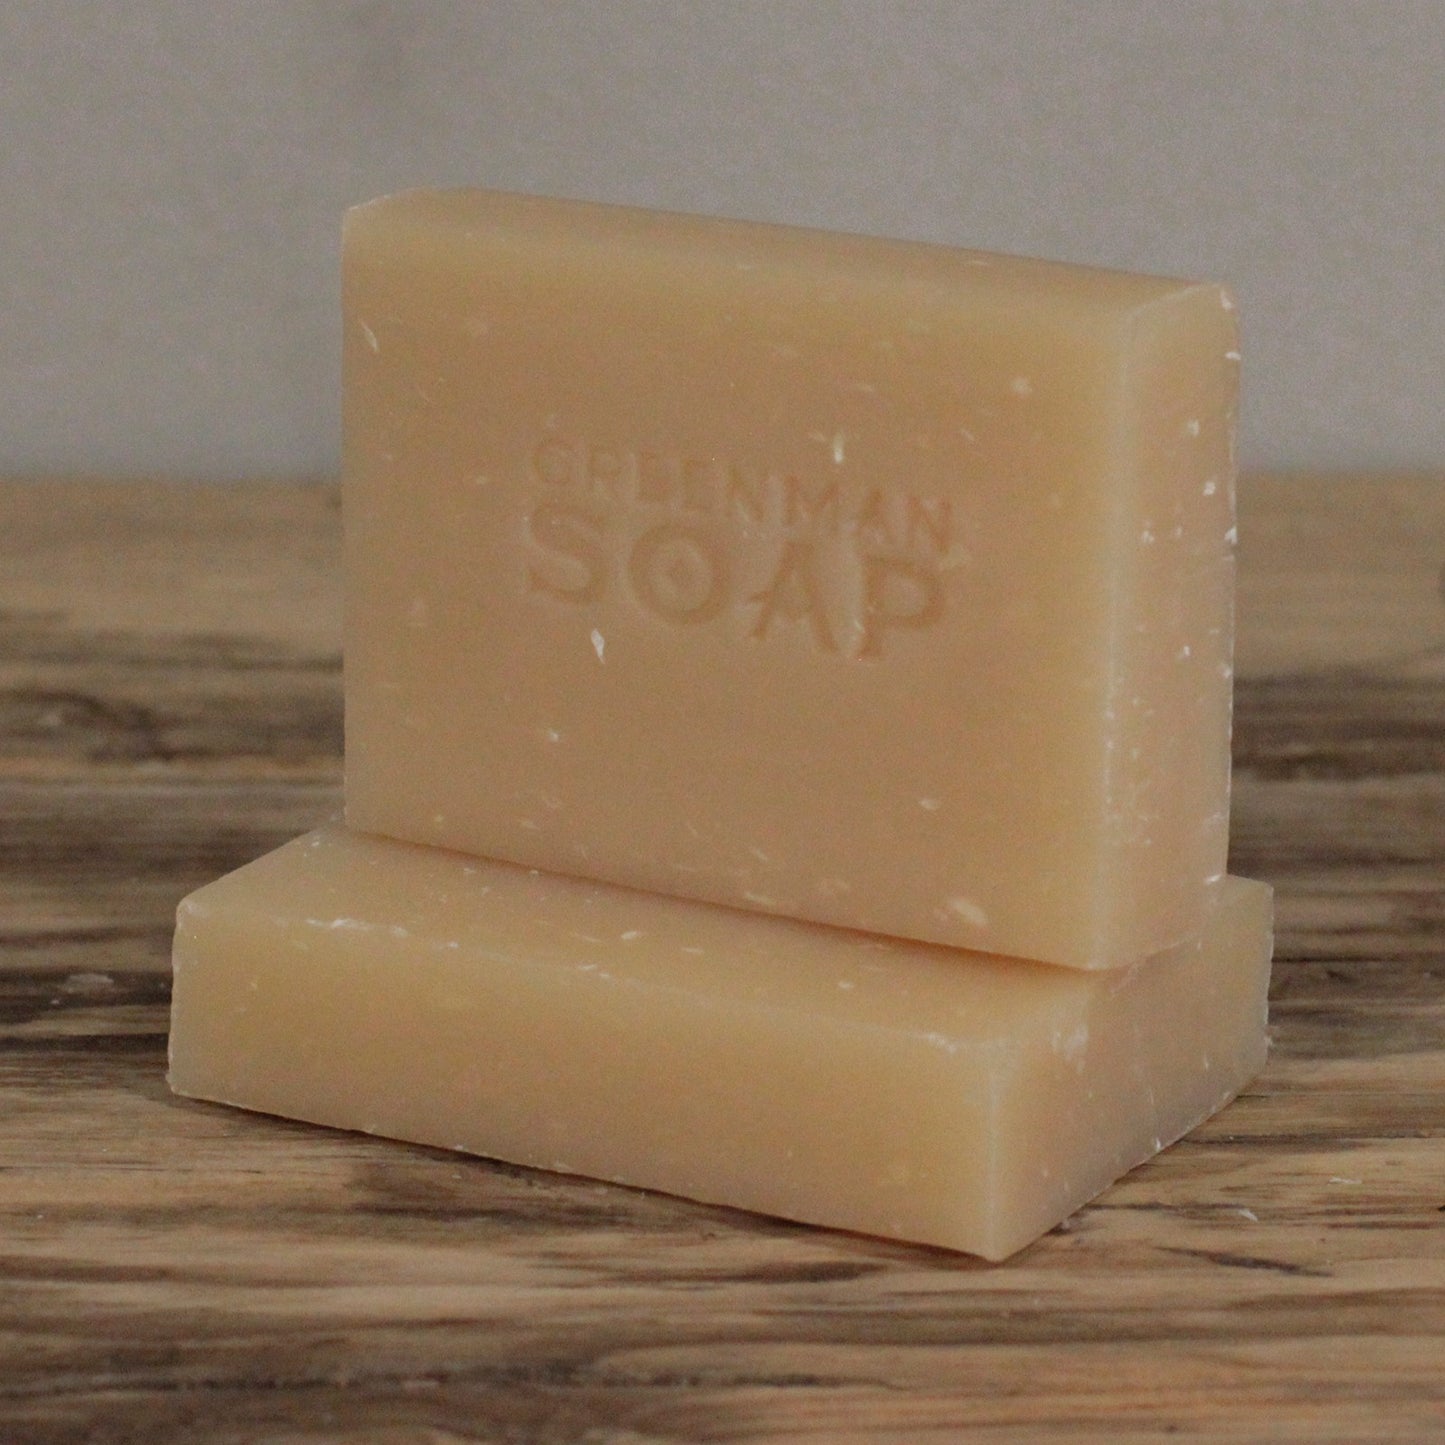 Greenman Soap Slice 100g - Coconut Cool & Calm